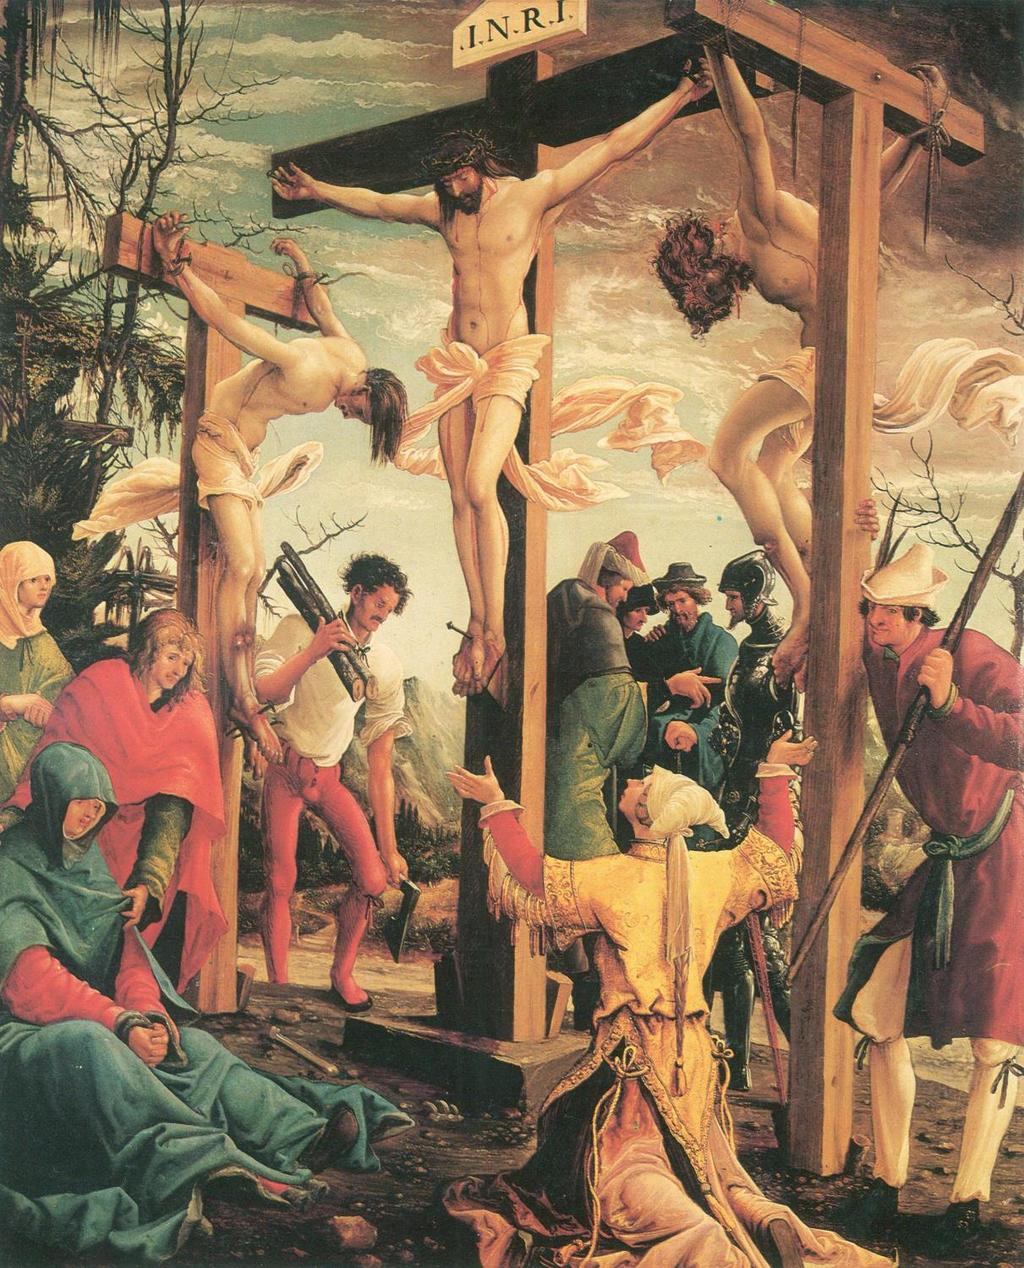 8) MUSEL TAK TRPĚT? Ježíš musel za nás zemřít, ale musel zemřít na kříži, musel tak trpět?